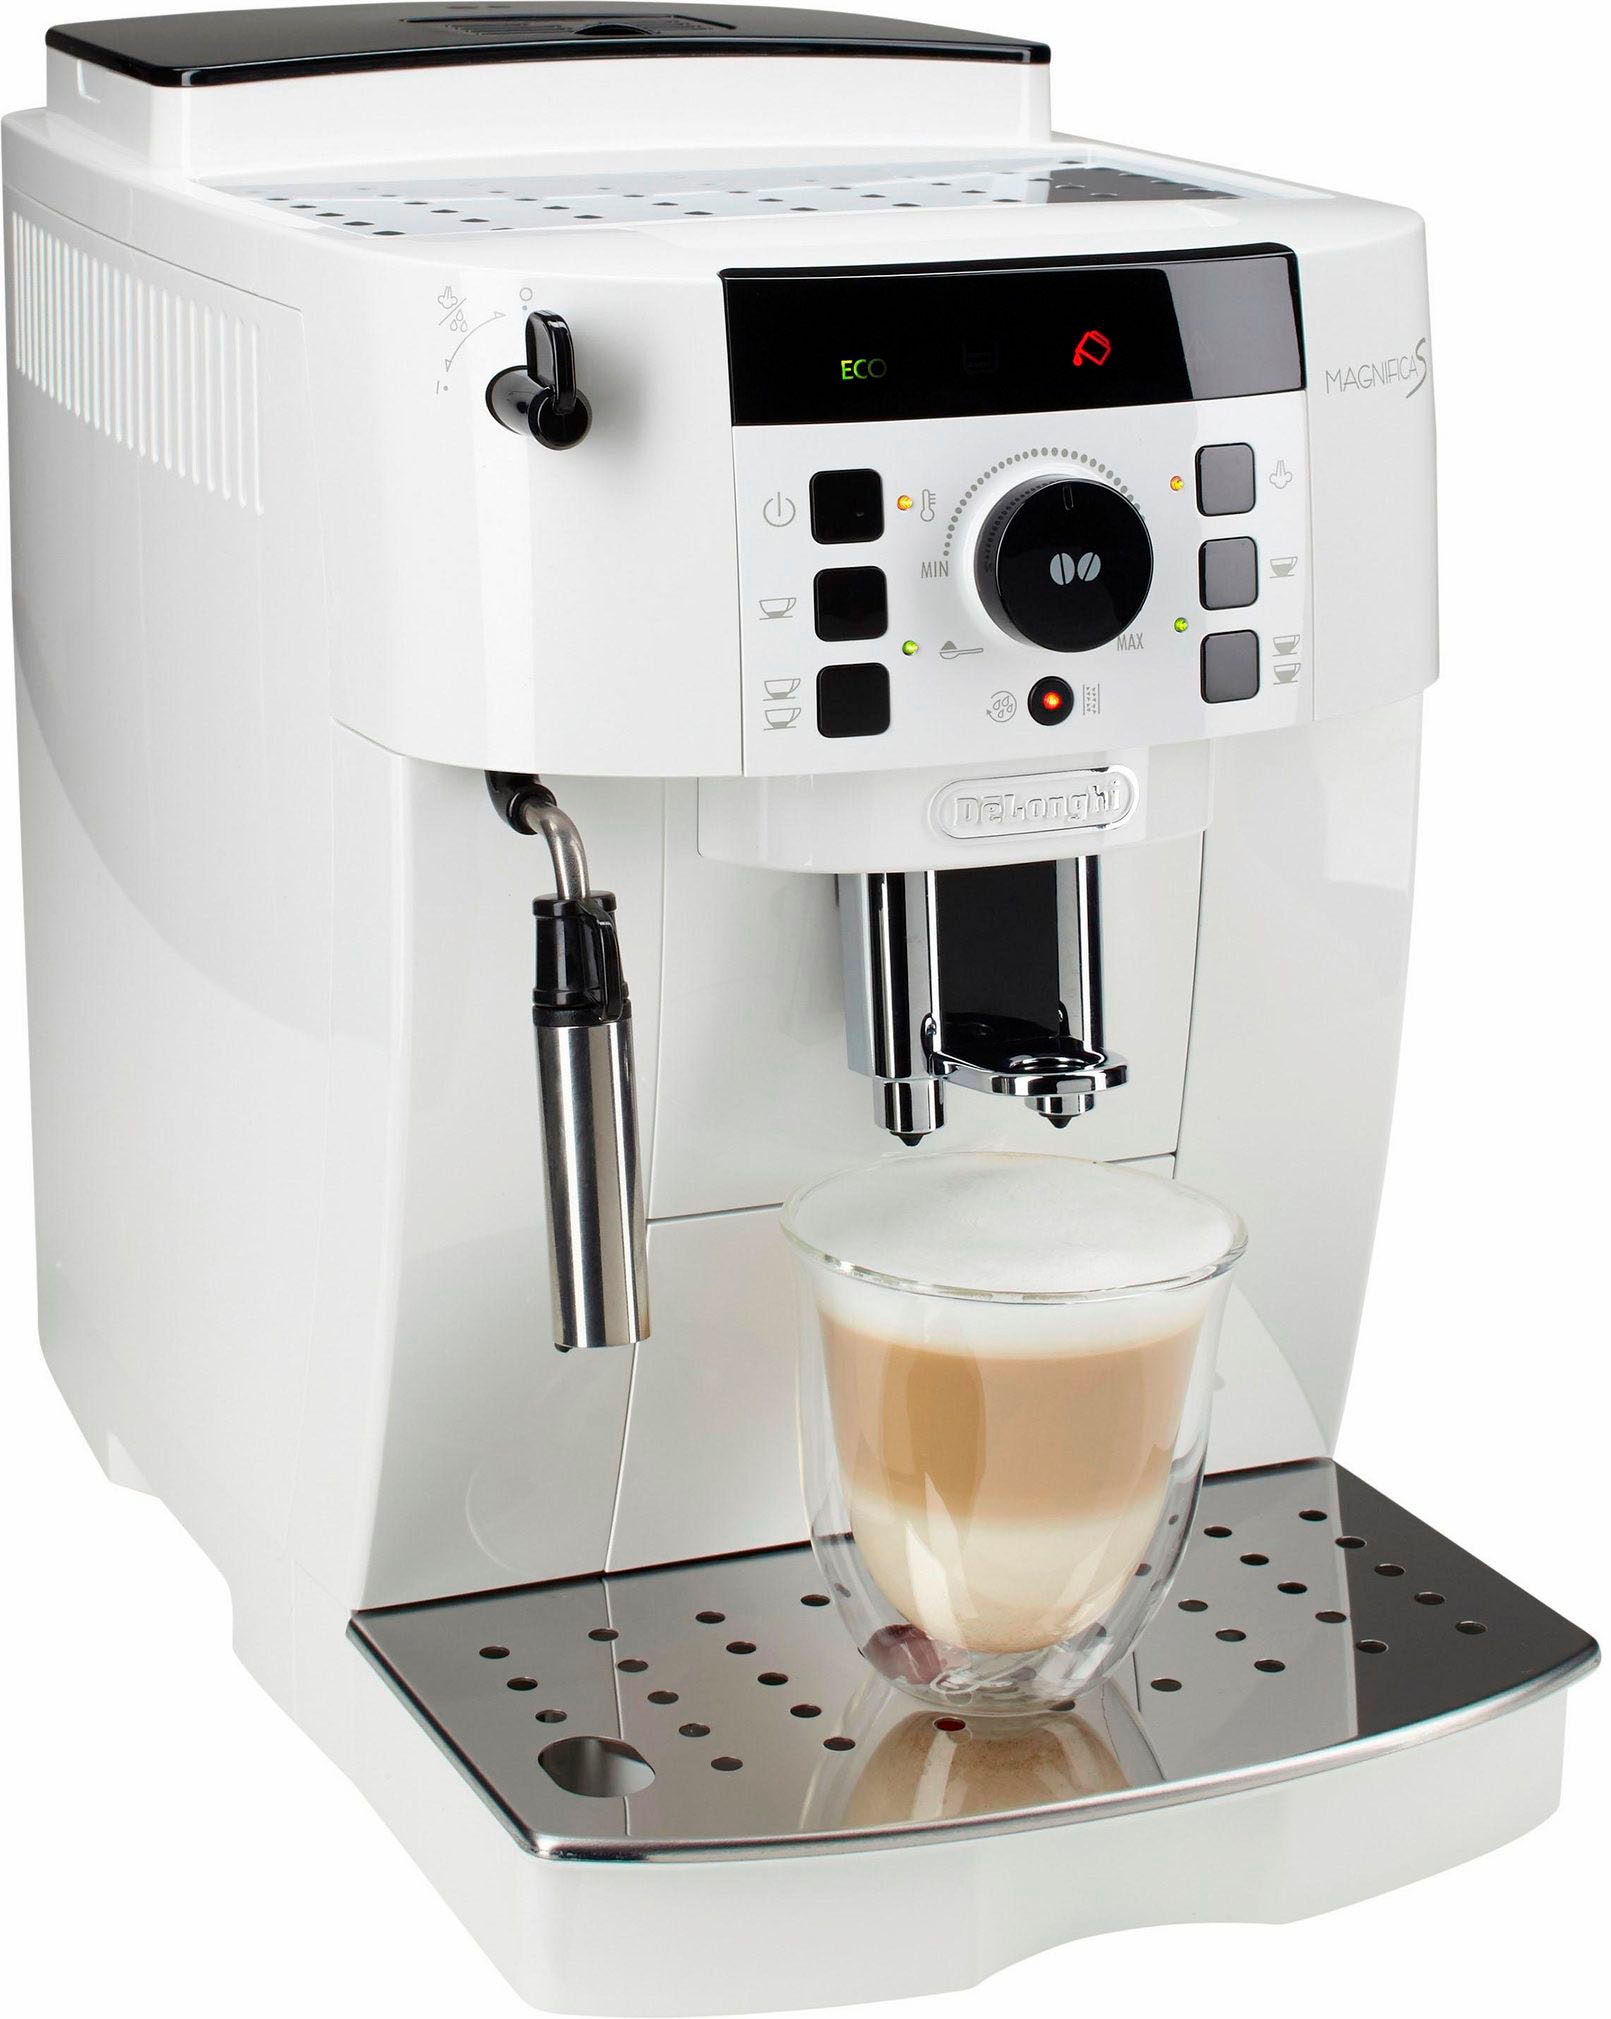 De'Longhi Kaffeevollautomat »Magnifica S ECAM 21...